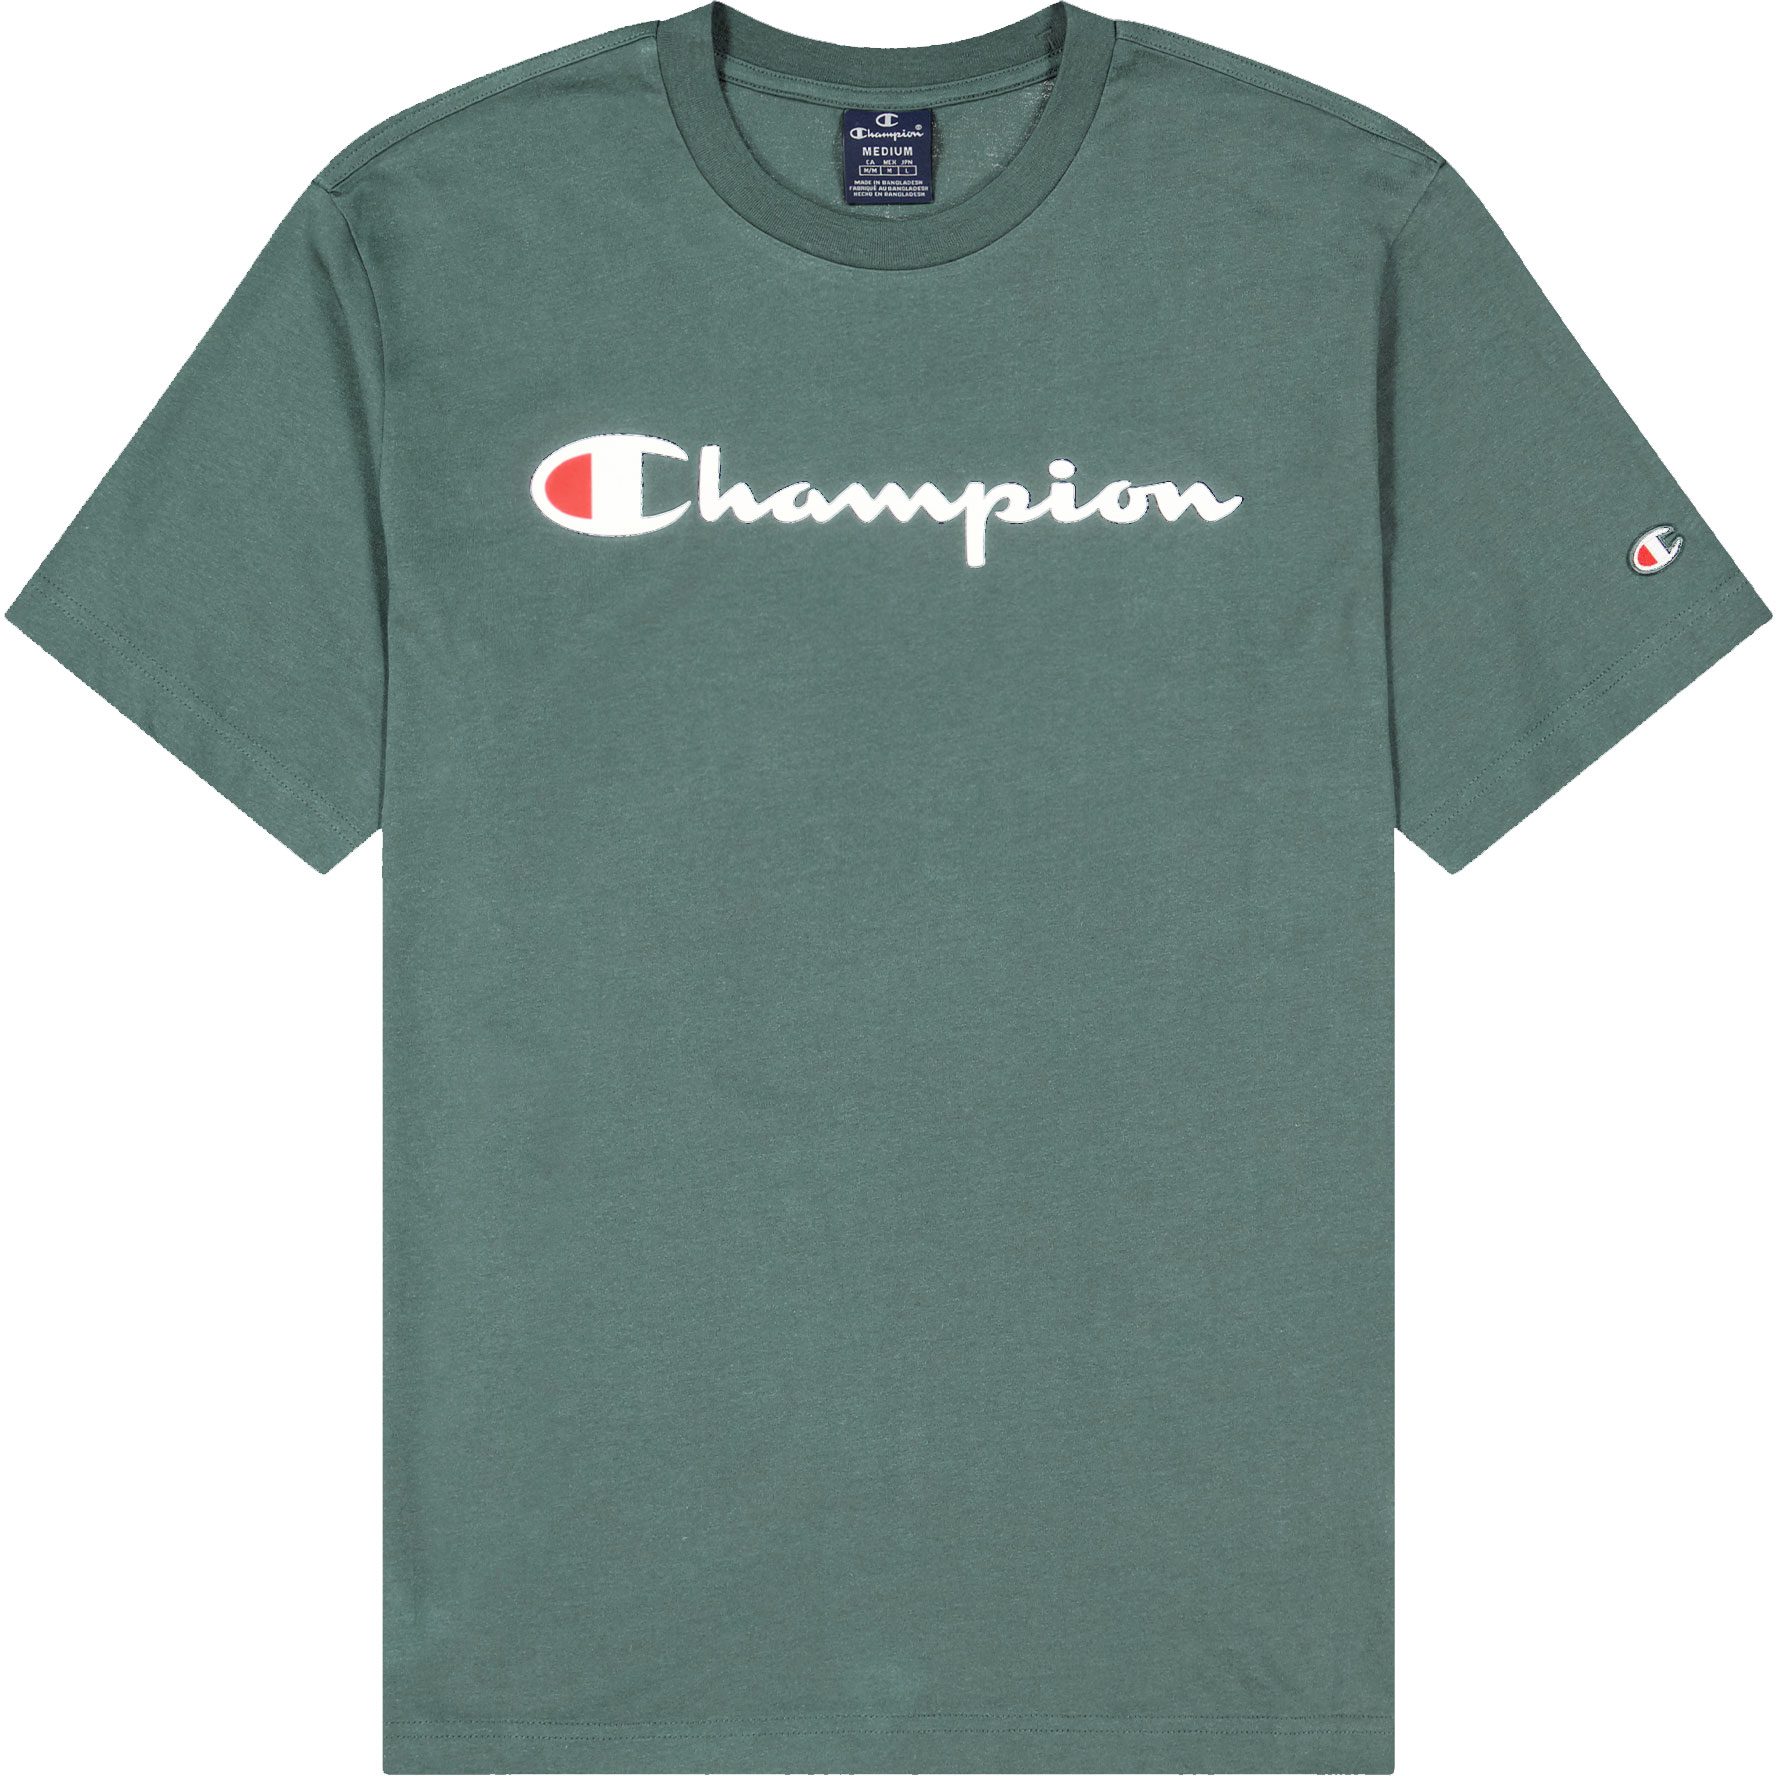 Champion - Crewneck T-Shirt Herren balsamo green kaufen im Sport Bittl Shop